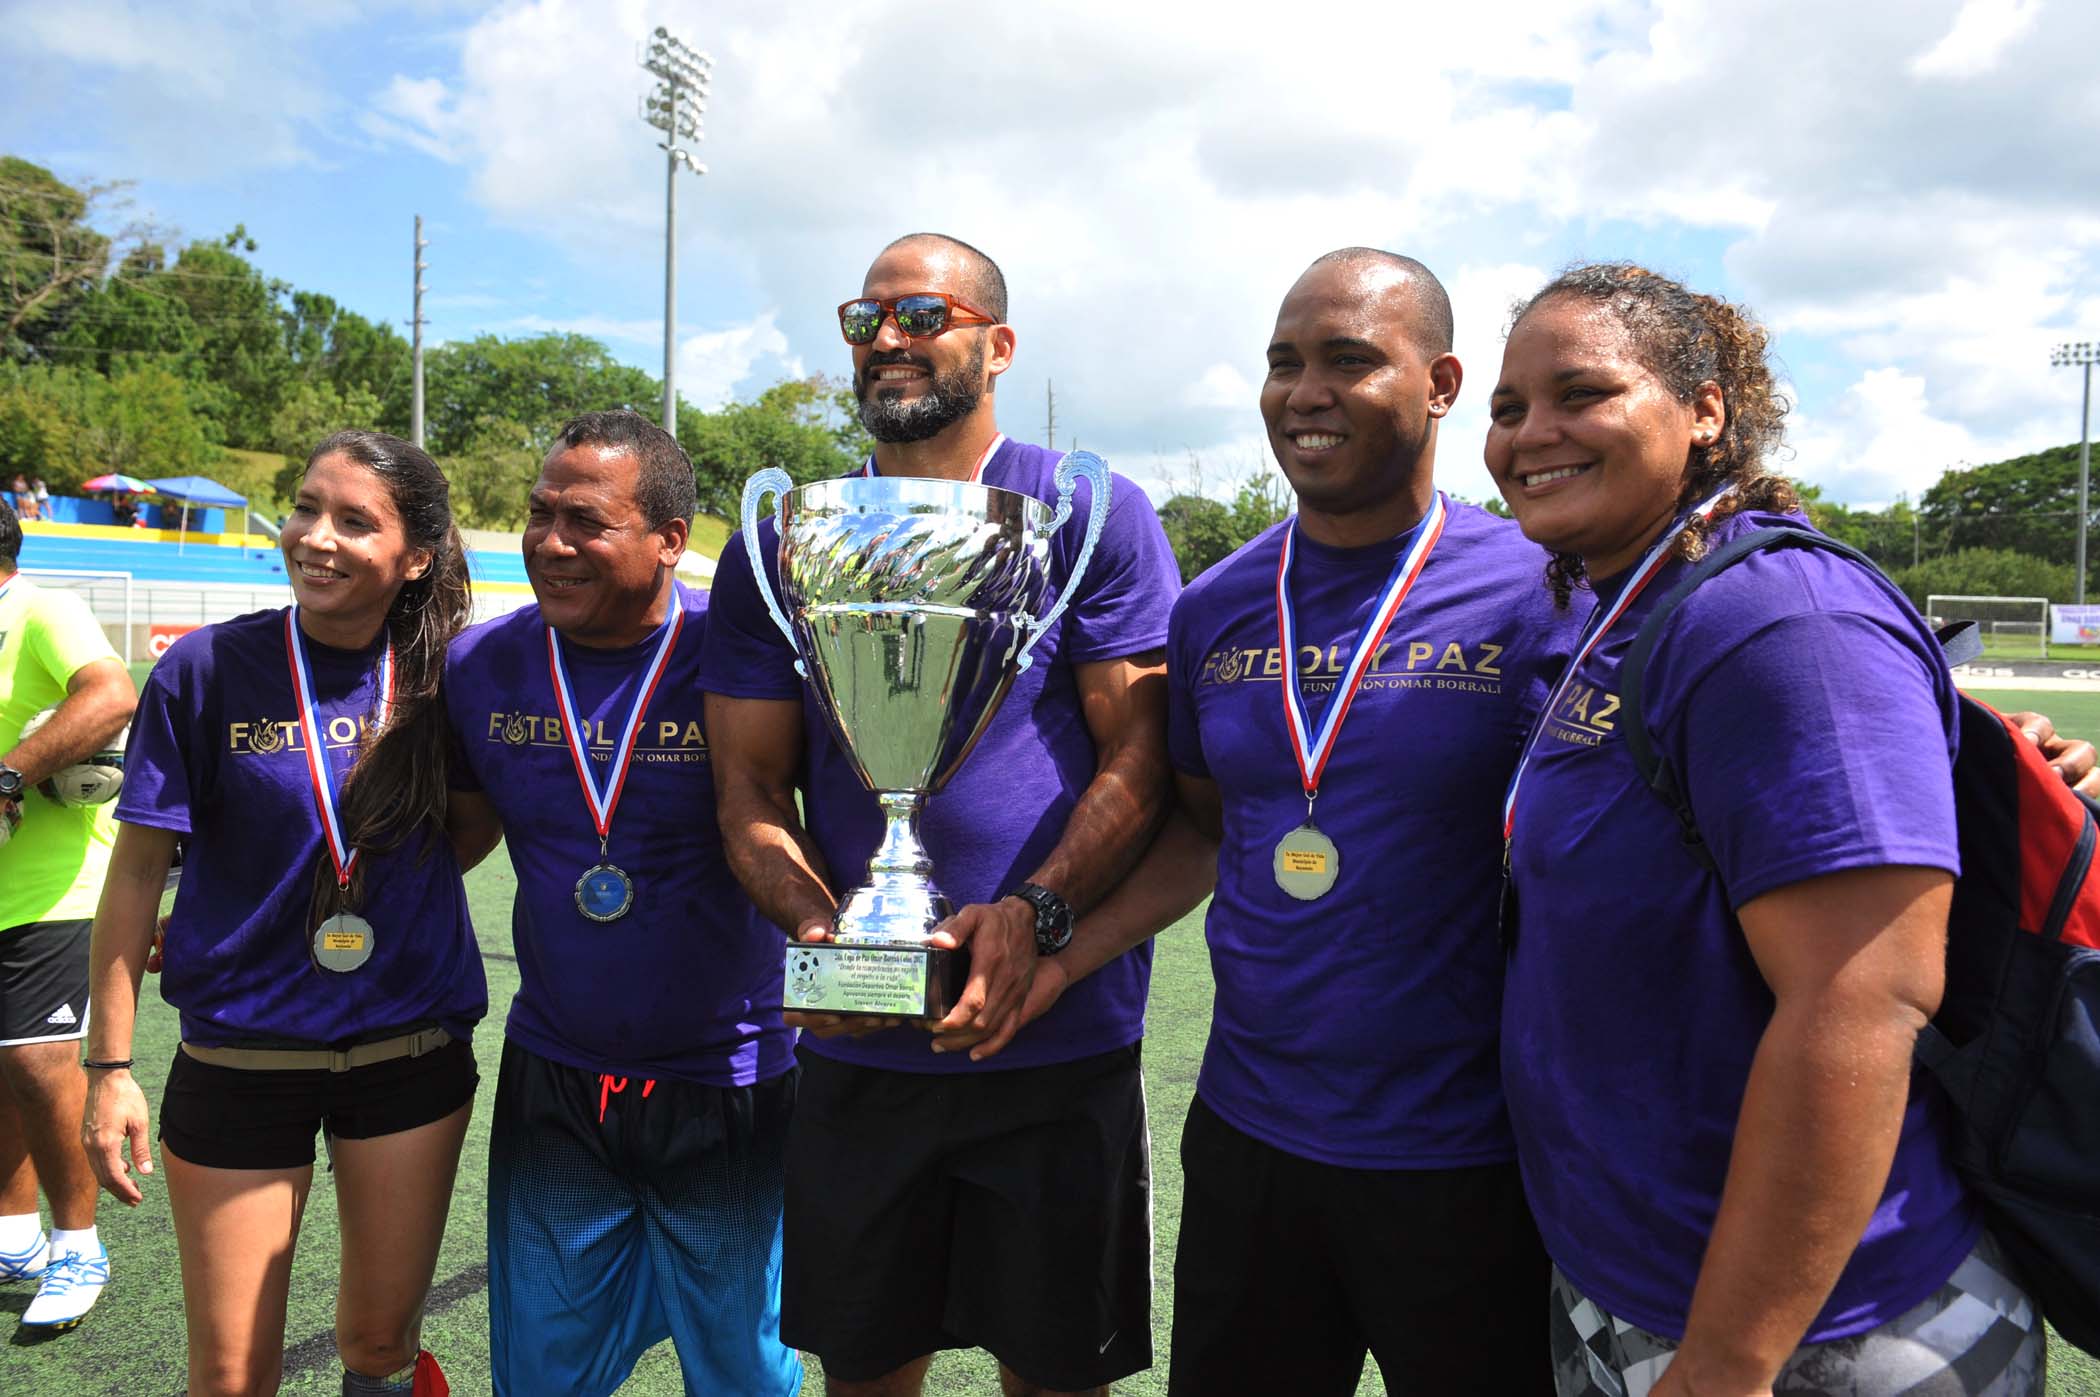 Equipo violeta con su trofeo y medallas